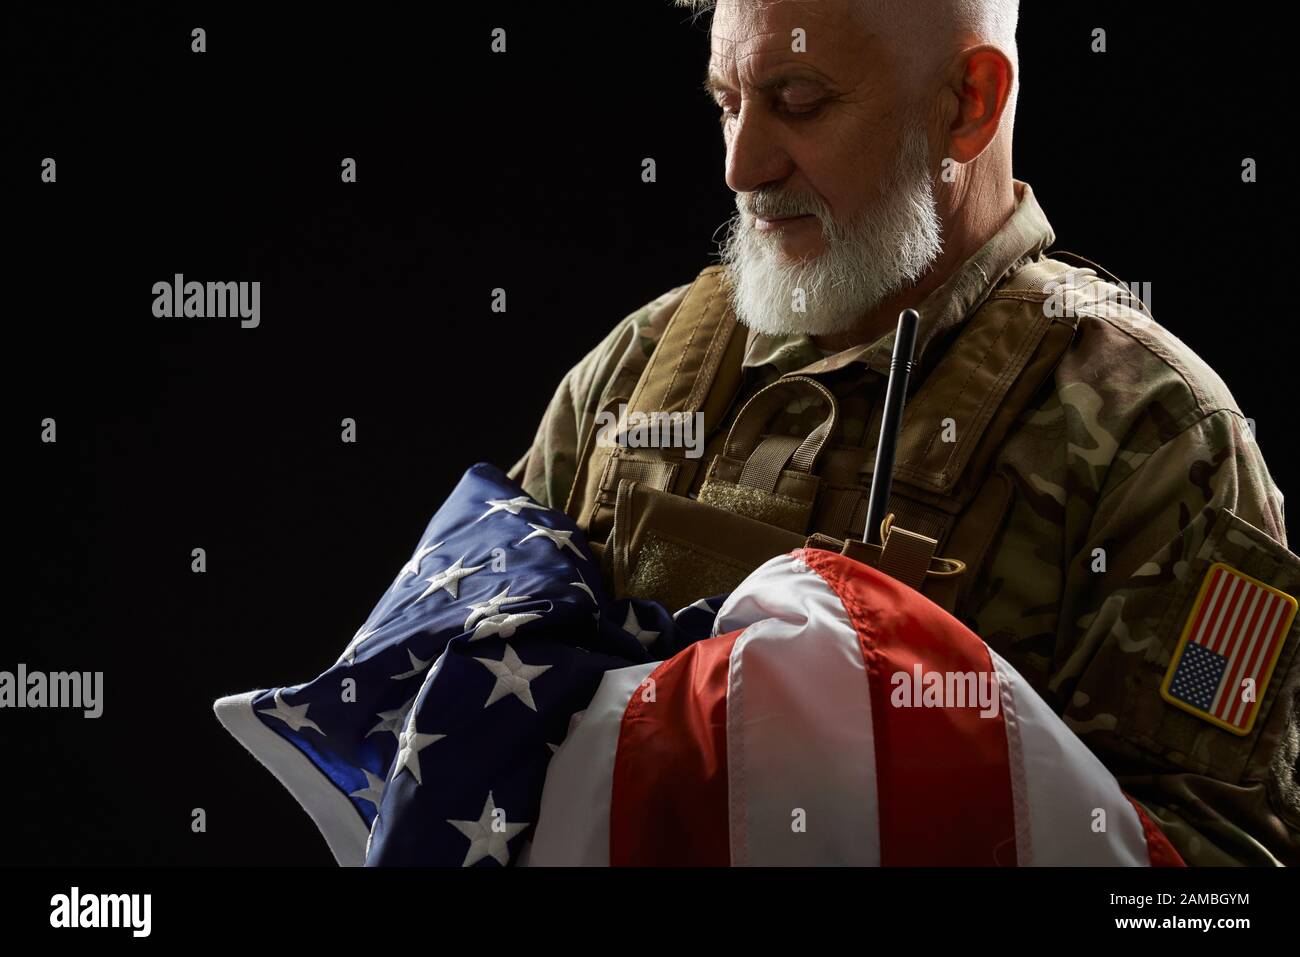 Raccolto di bearded veterano militare americano che tiene la bandiera in armi. Ritratto di vecchio ufficiale maschile orgoglioso in uniforme camouflage posa in un'atmosfera buia. Concetto di militare, patriottismo. Foto Stock